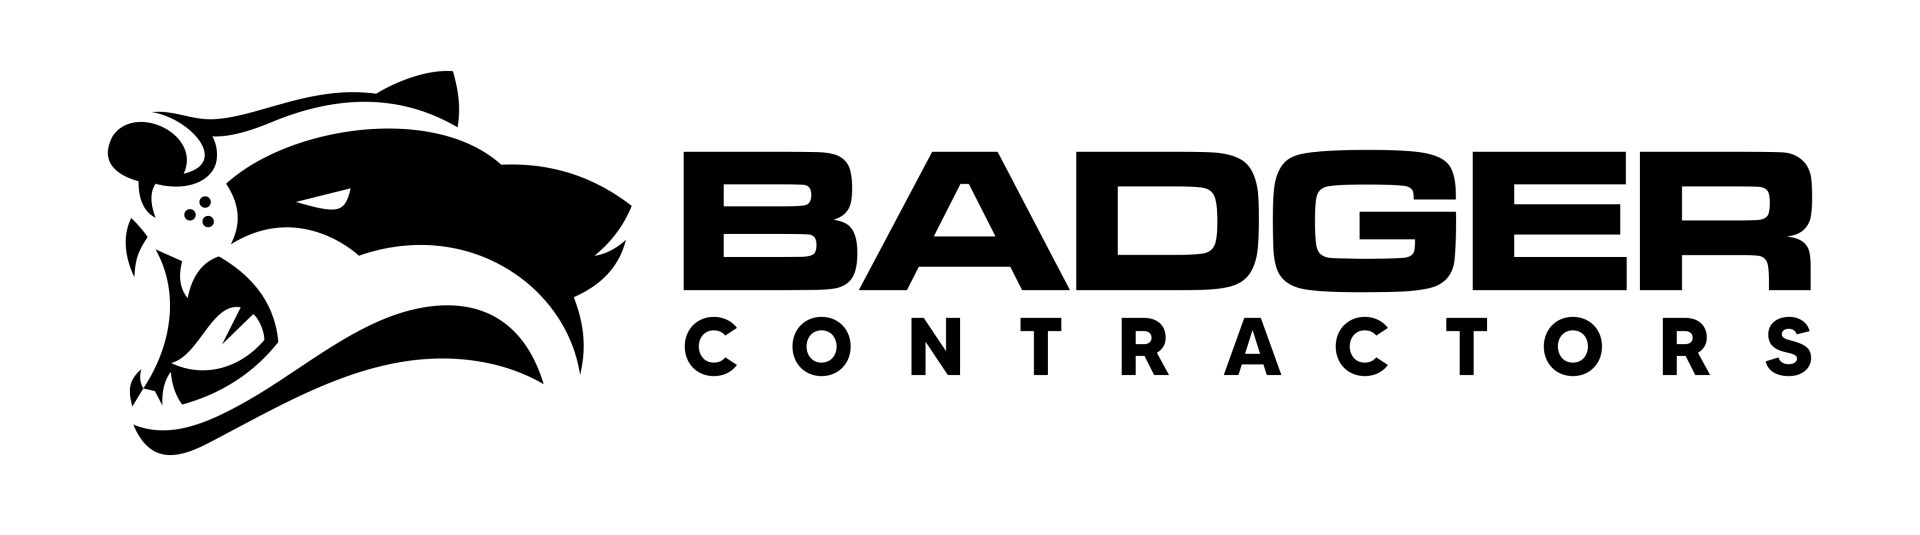 badger contractors logo